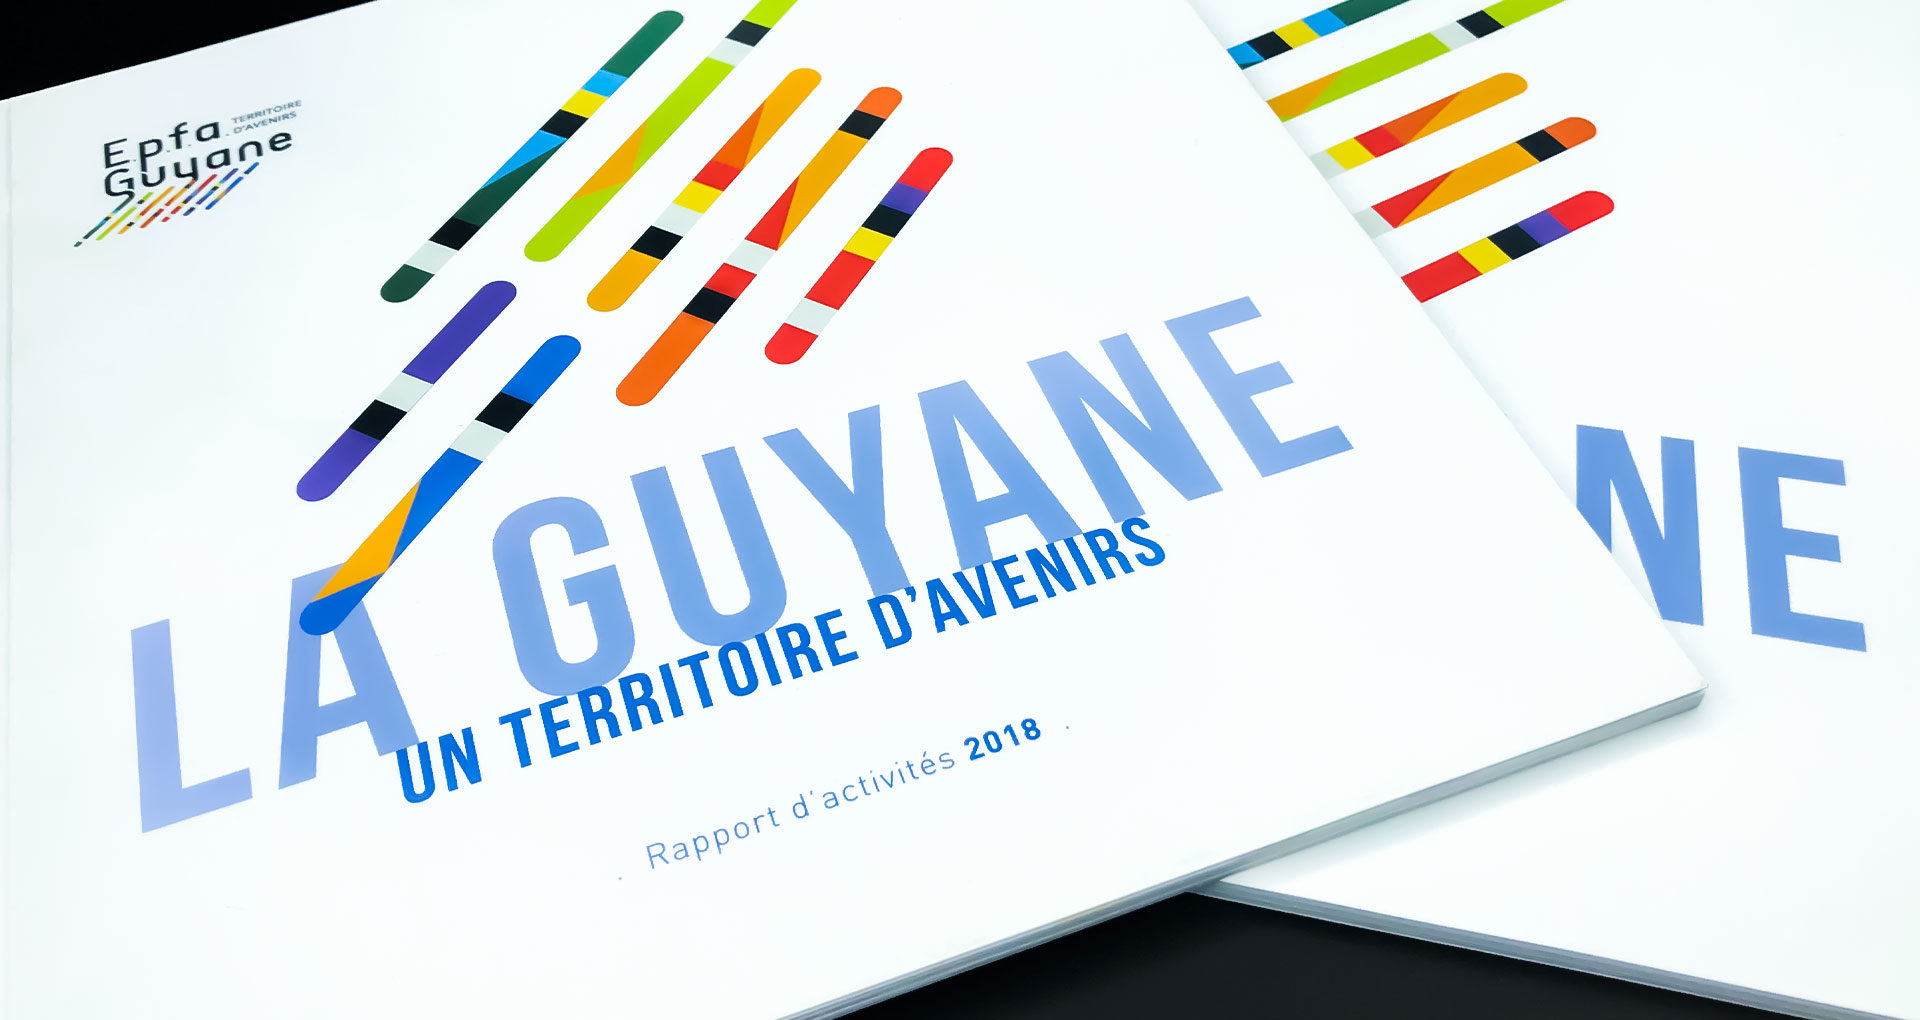 Identité visuelle, Direction Artistique - Rapport d'activité EPFA Guyane